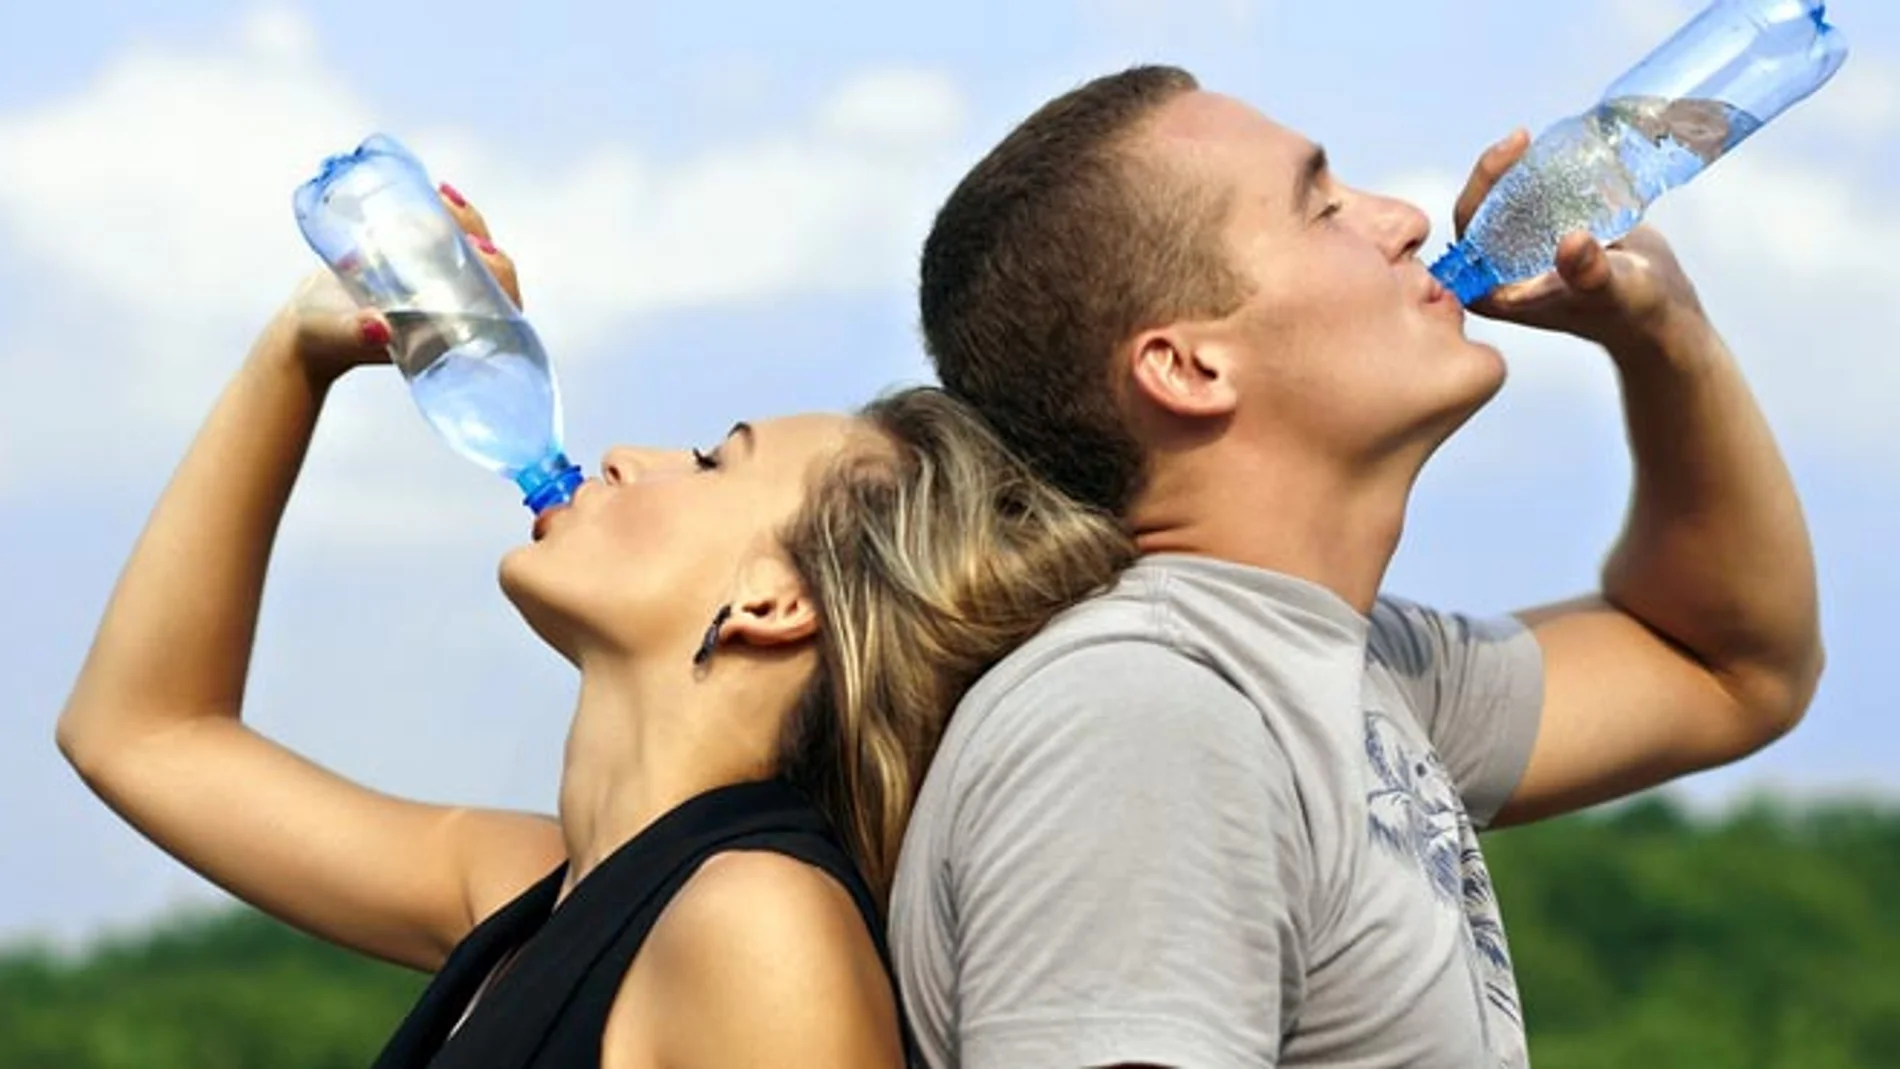 Se ha calculado que las necesidades de hidratación de una persona haciendo deporte moderado al sol son de un litro de agua por cada hora de esfuerzo